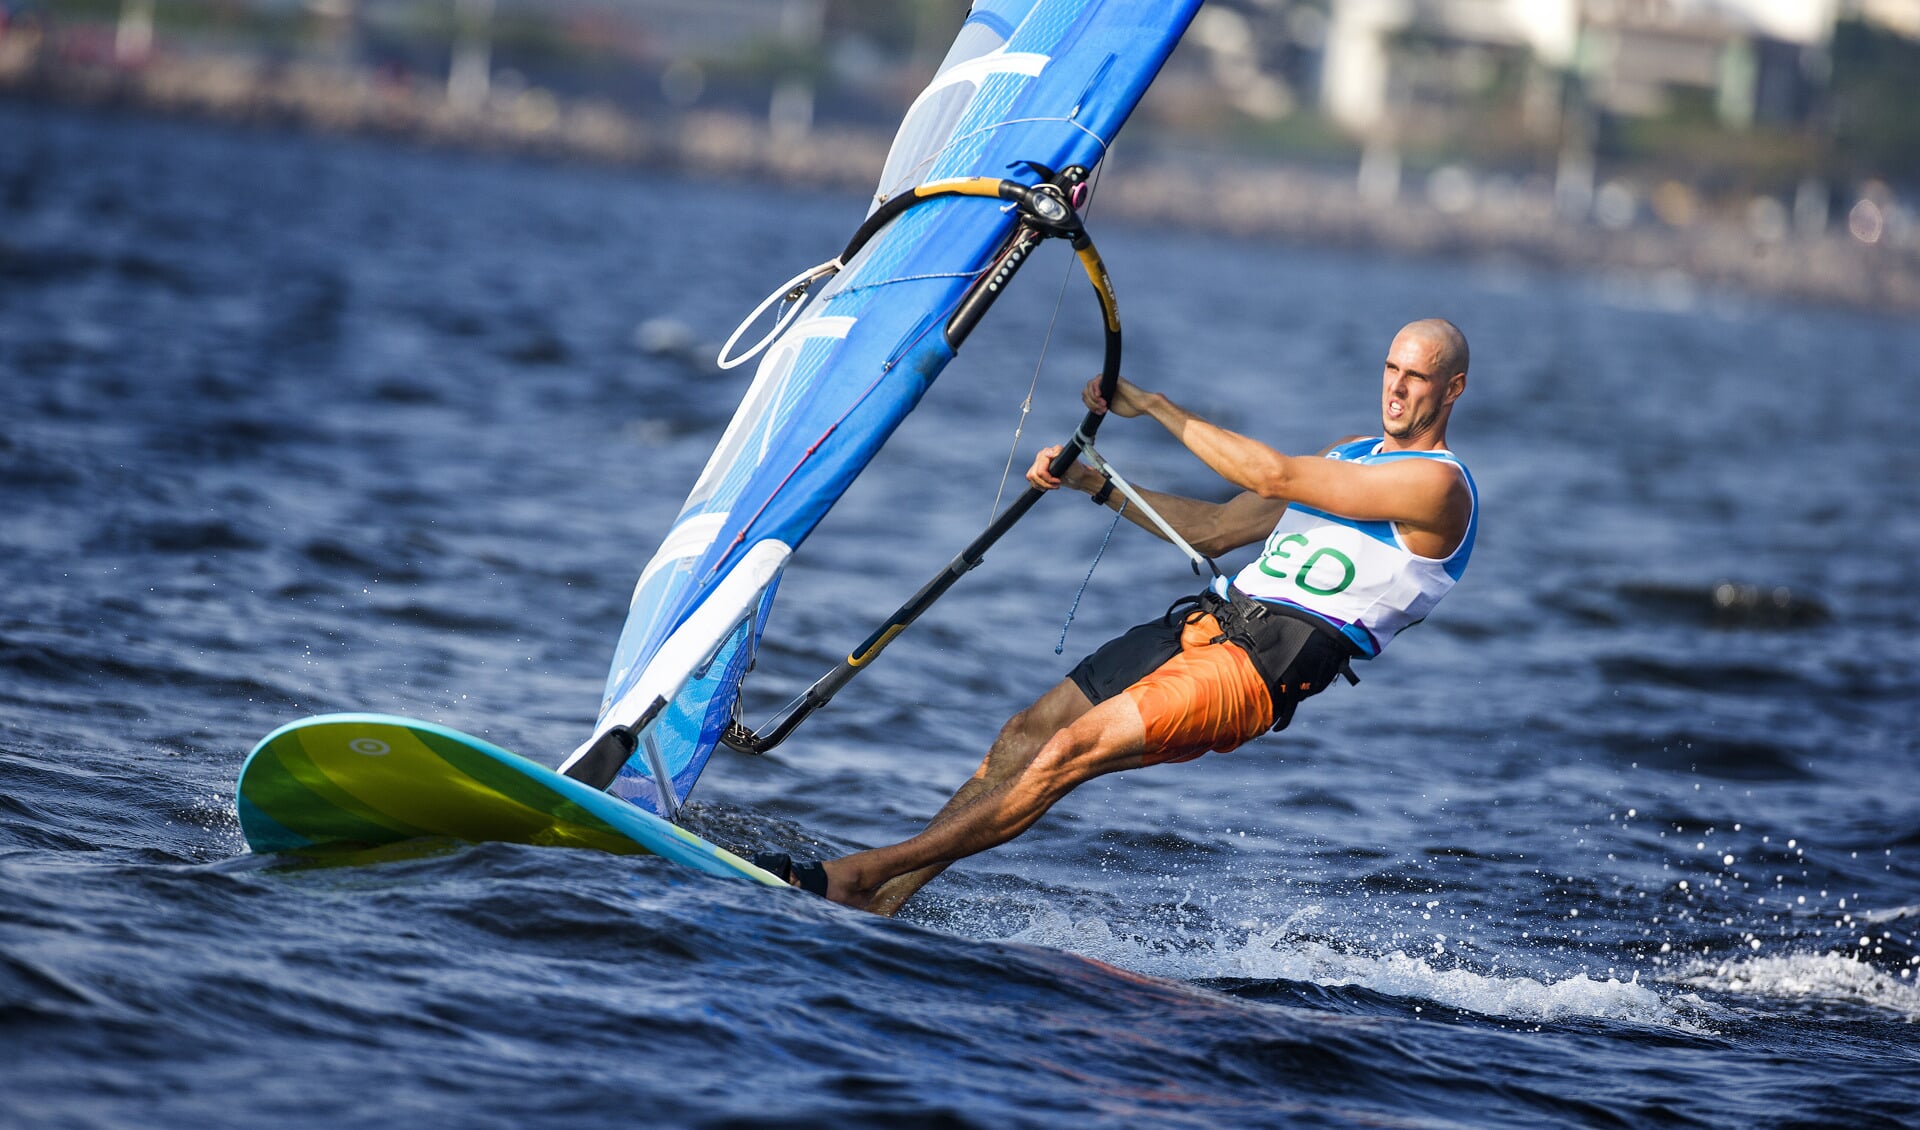 Dorian in actie in Rio, foto:Richard LangdonOcean Images.